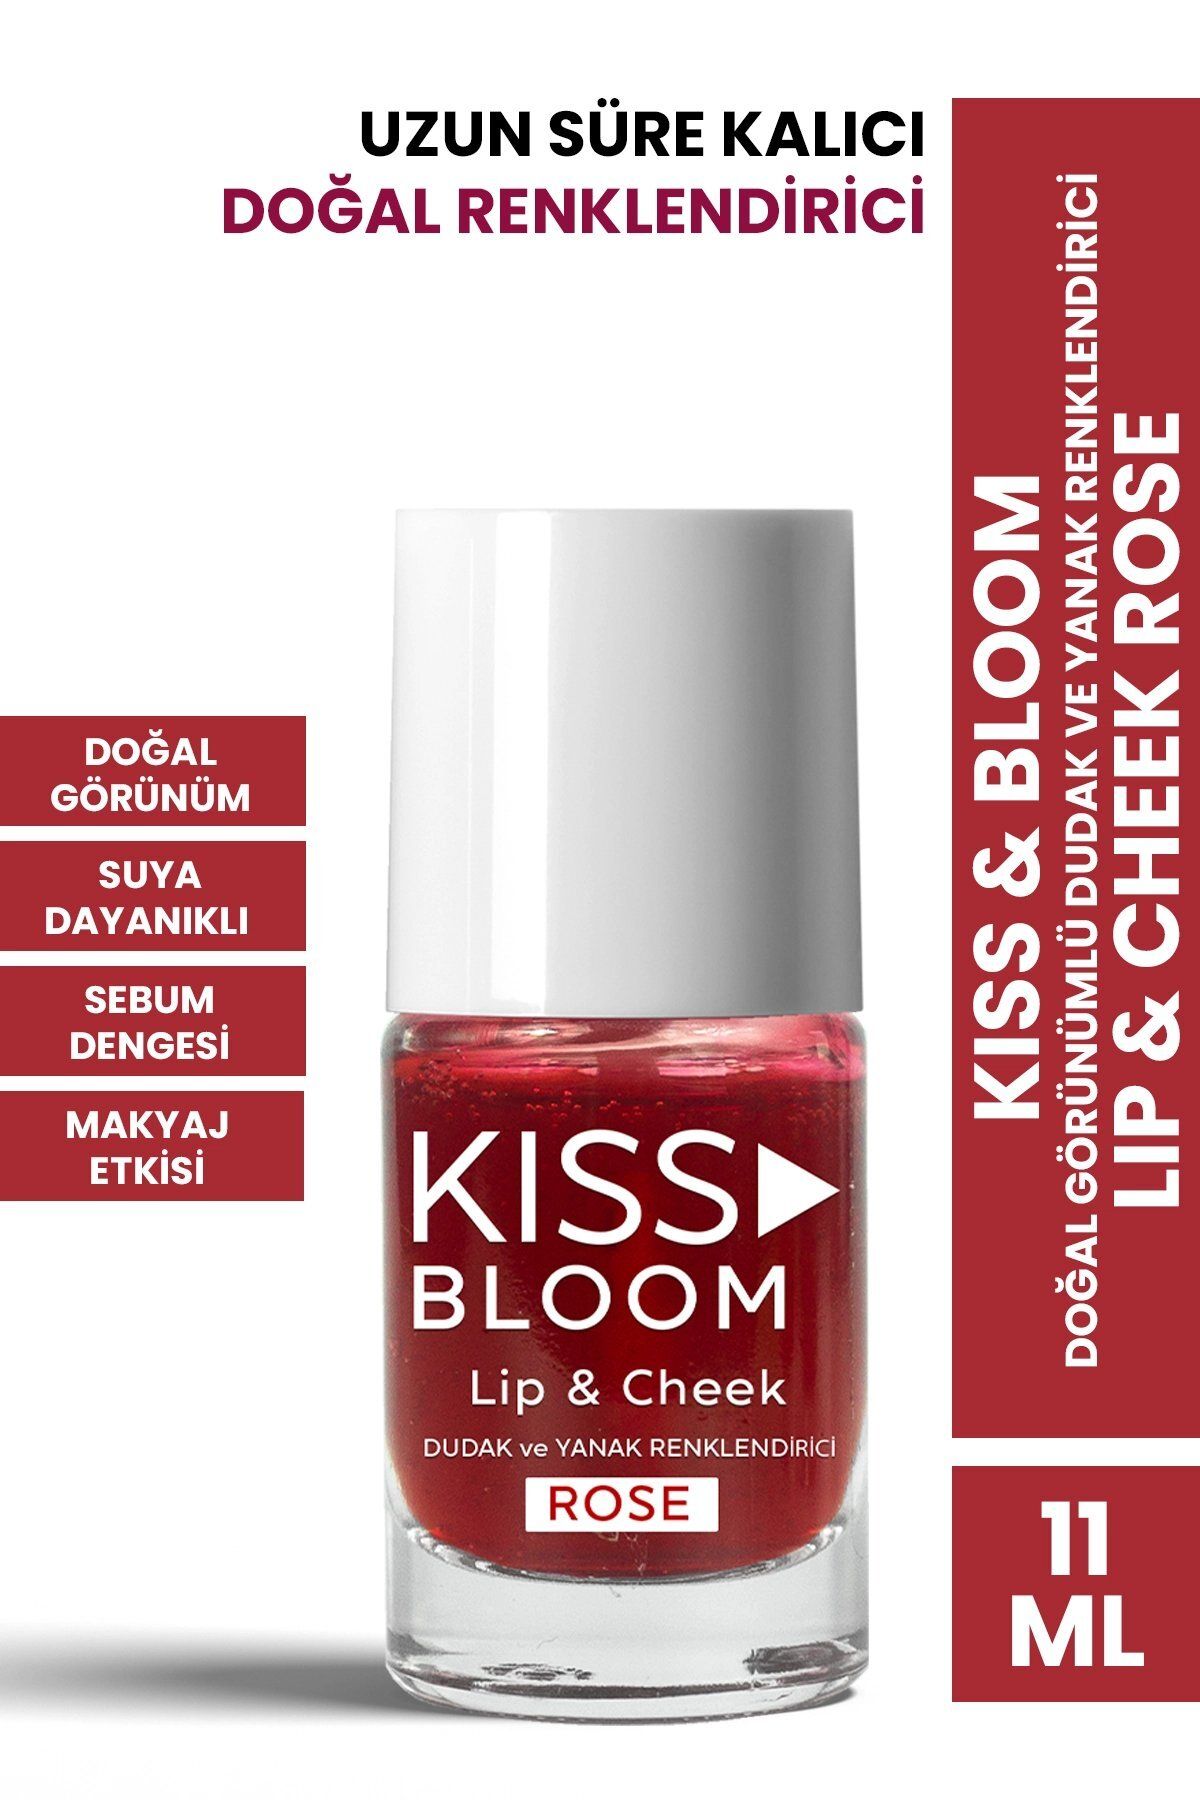 PROCSIN Kiss & Bloom Doğal Görünümlü Dudak ve Yanak Renklendirici Lip & Cheek Rose 11 ml